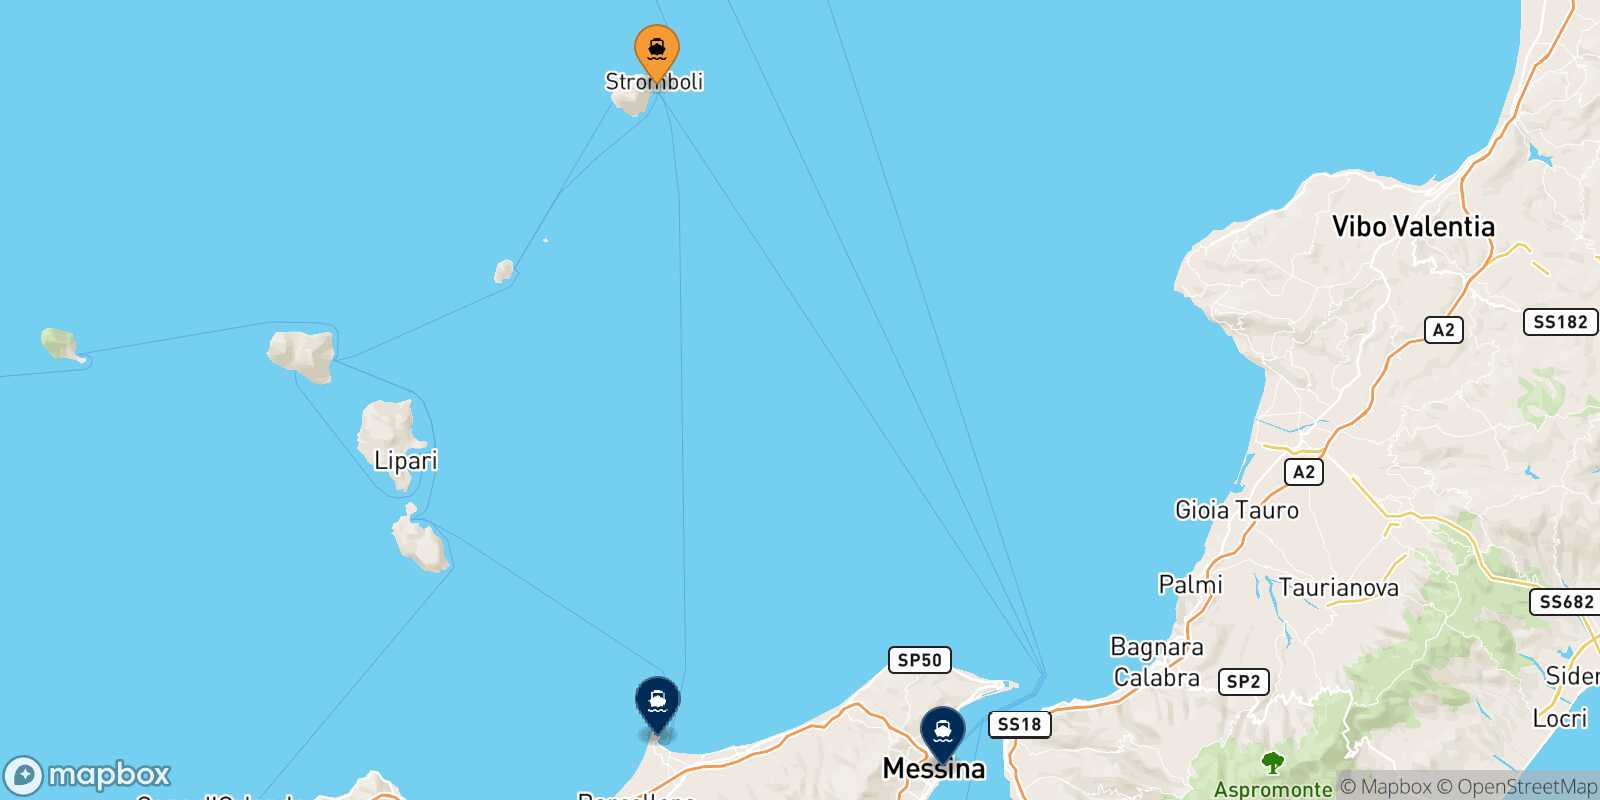 Mapa de los destinos alcanzables de Stromboli